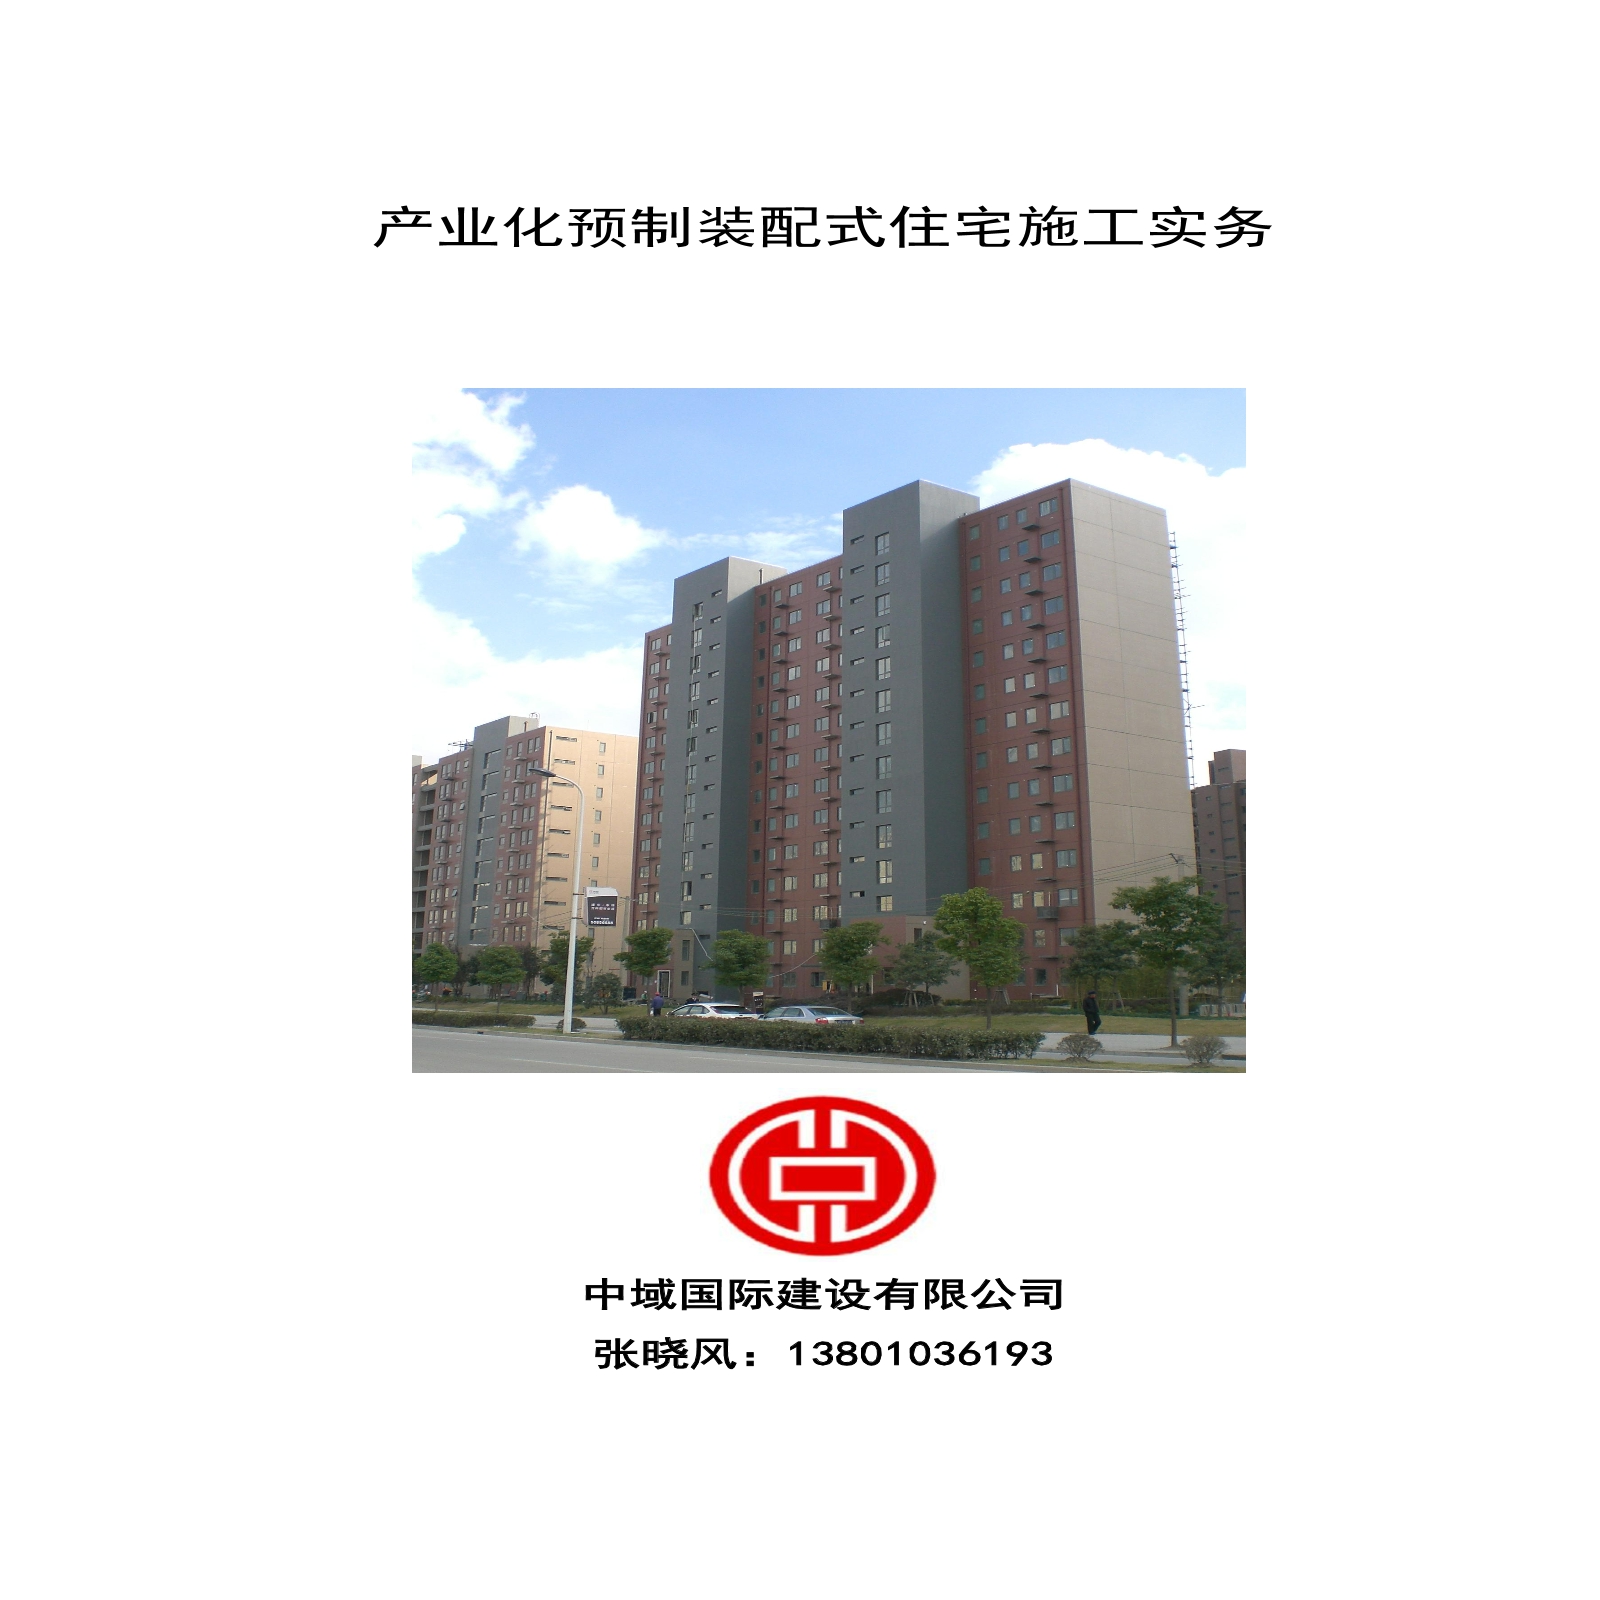 中域国际建设有限公司预制装配式住宅施工手册